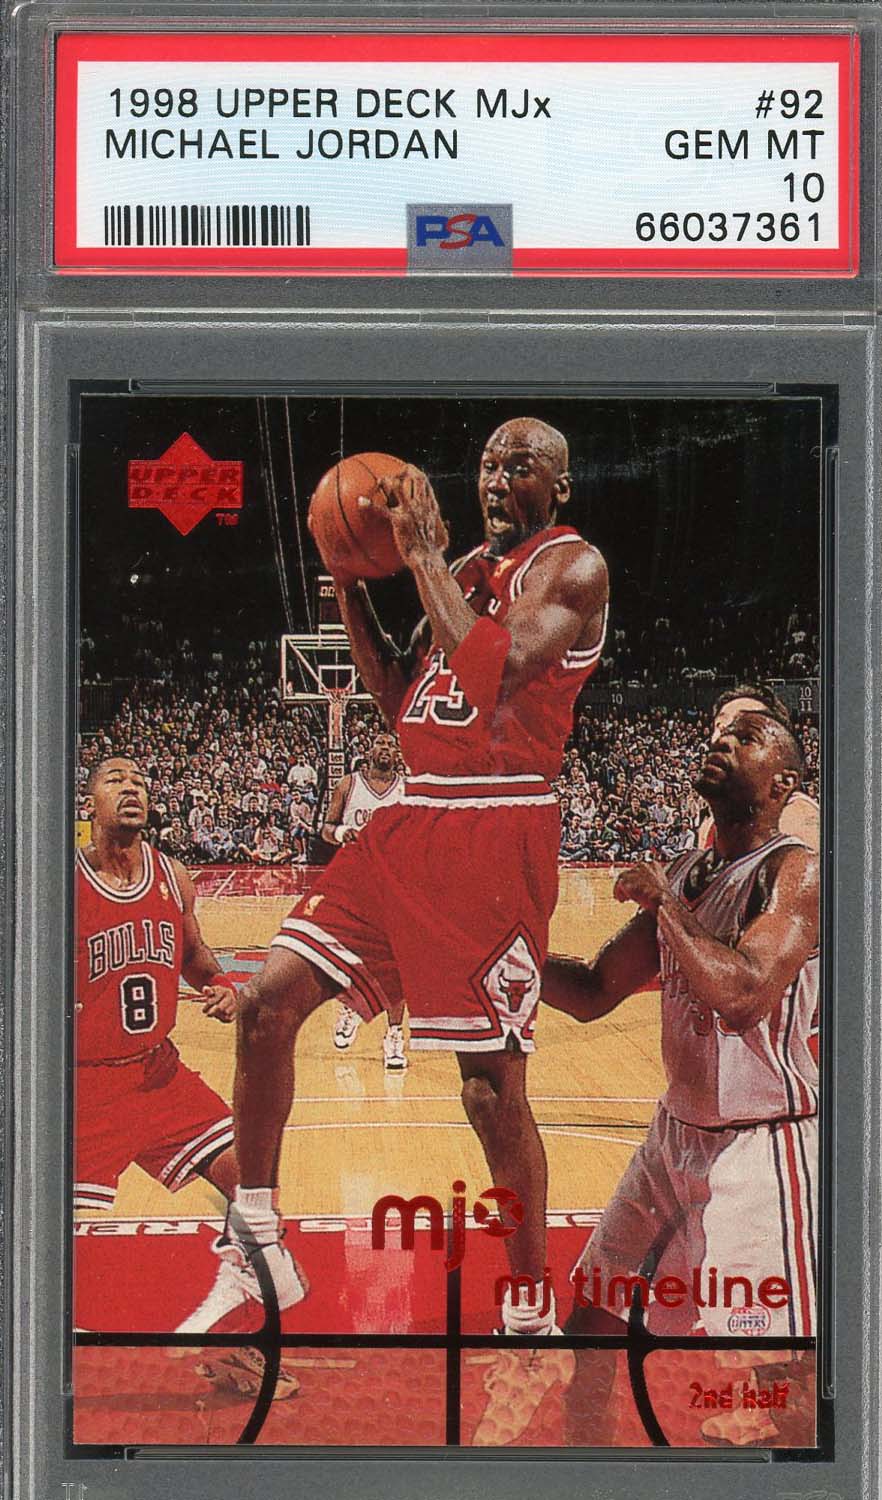 マイケル ジョーダン 1998 アッパー デッキ MJx バスケットボール カード #92 グレード PSA 10